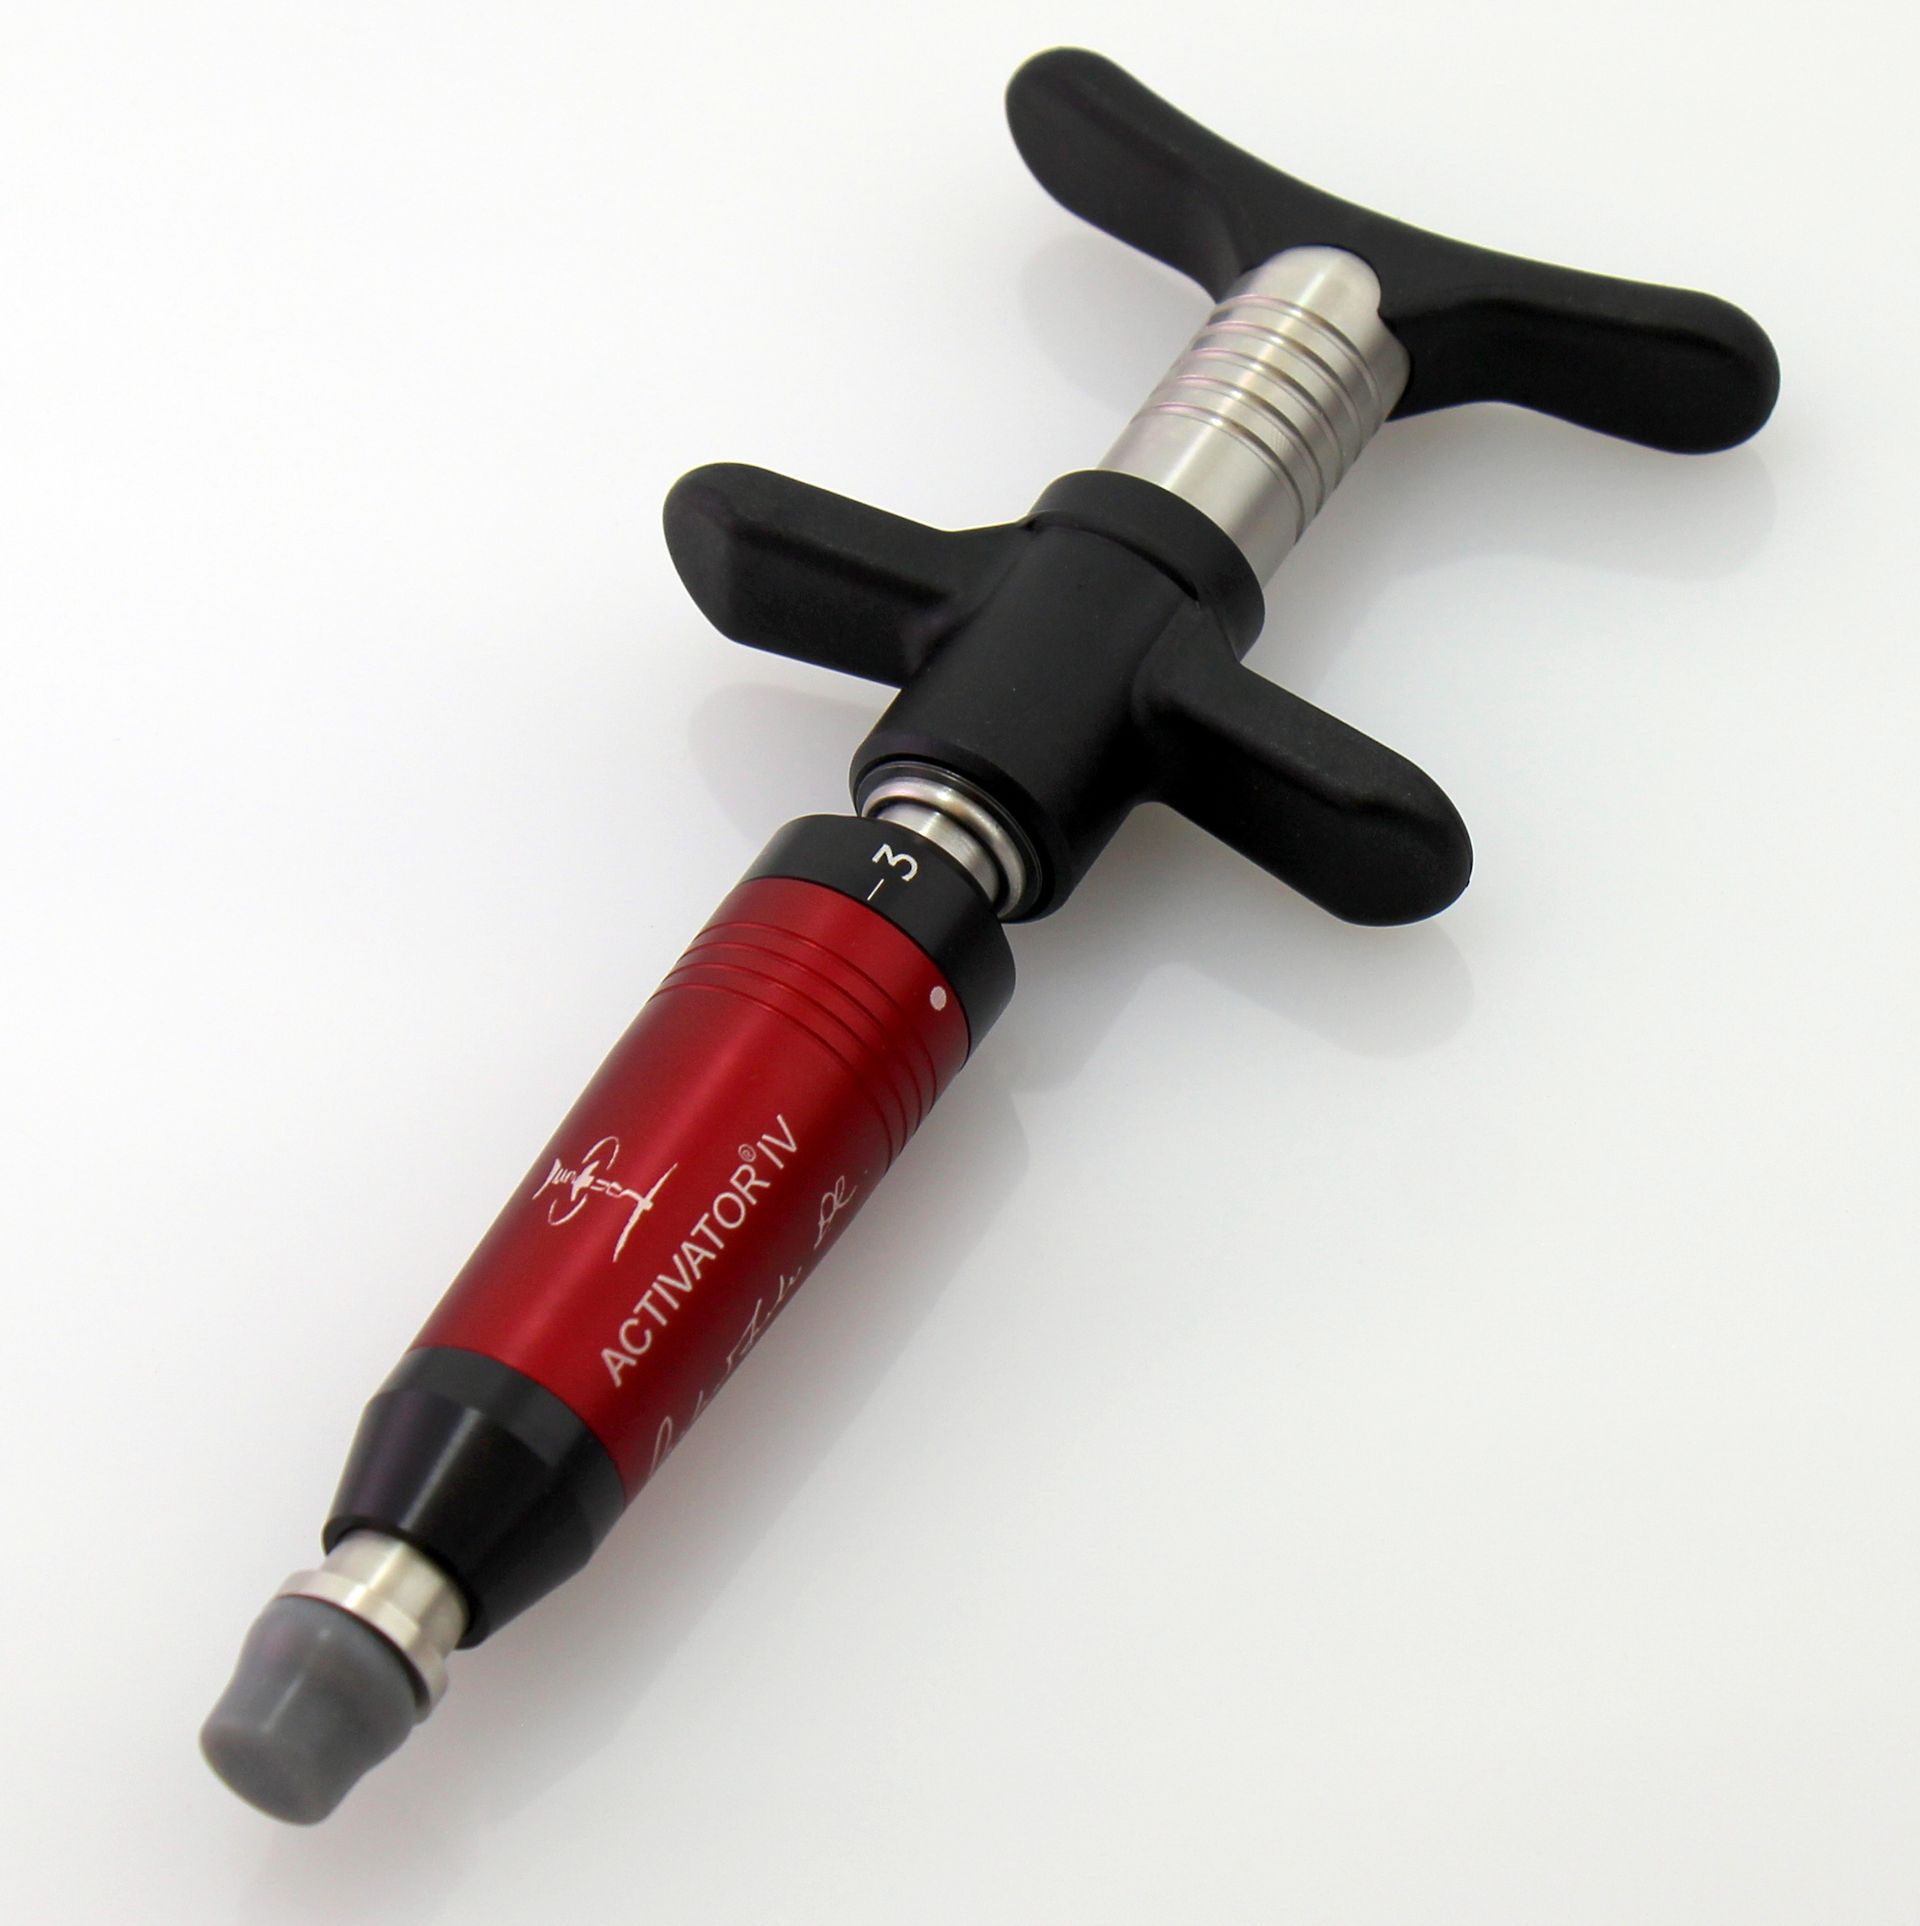 Activator instrument used in gentle chiropractic treaments